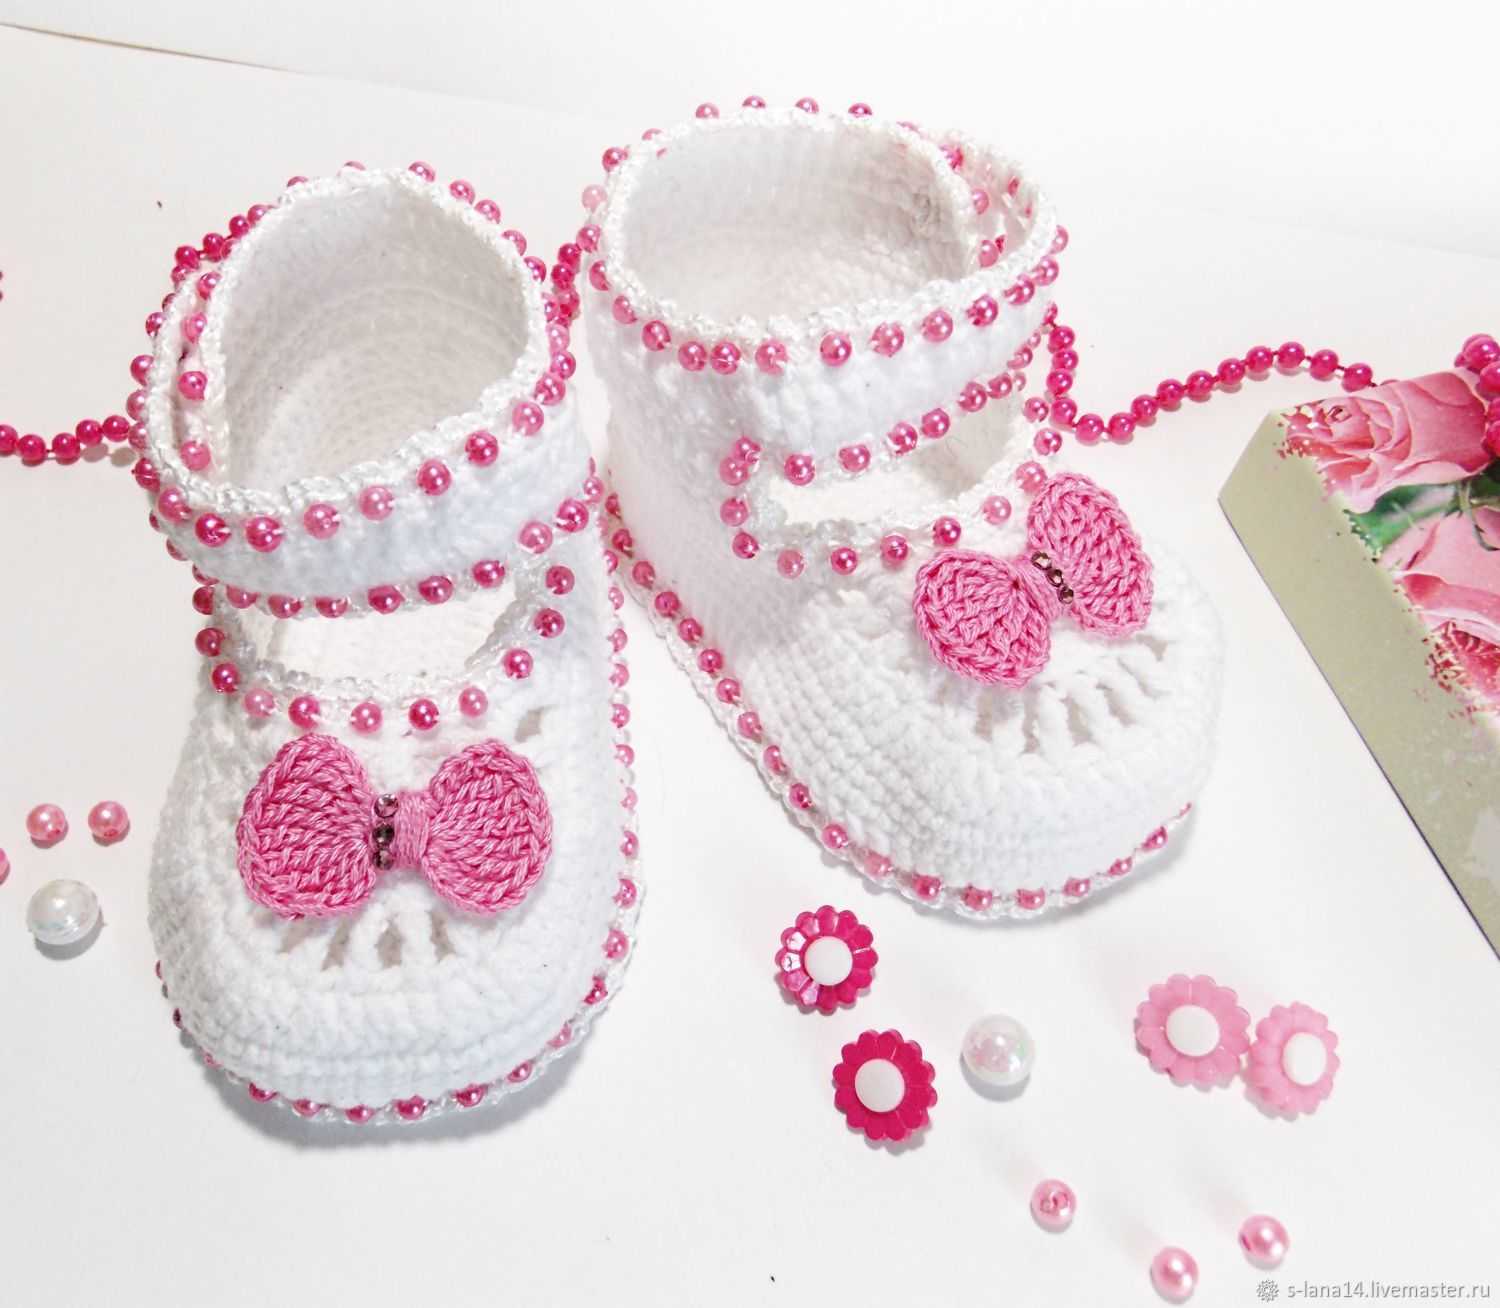 Пинетки для новорожденных малышей спицами: что можно связать для первой обуви малышам